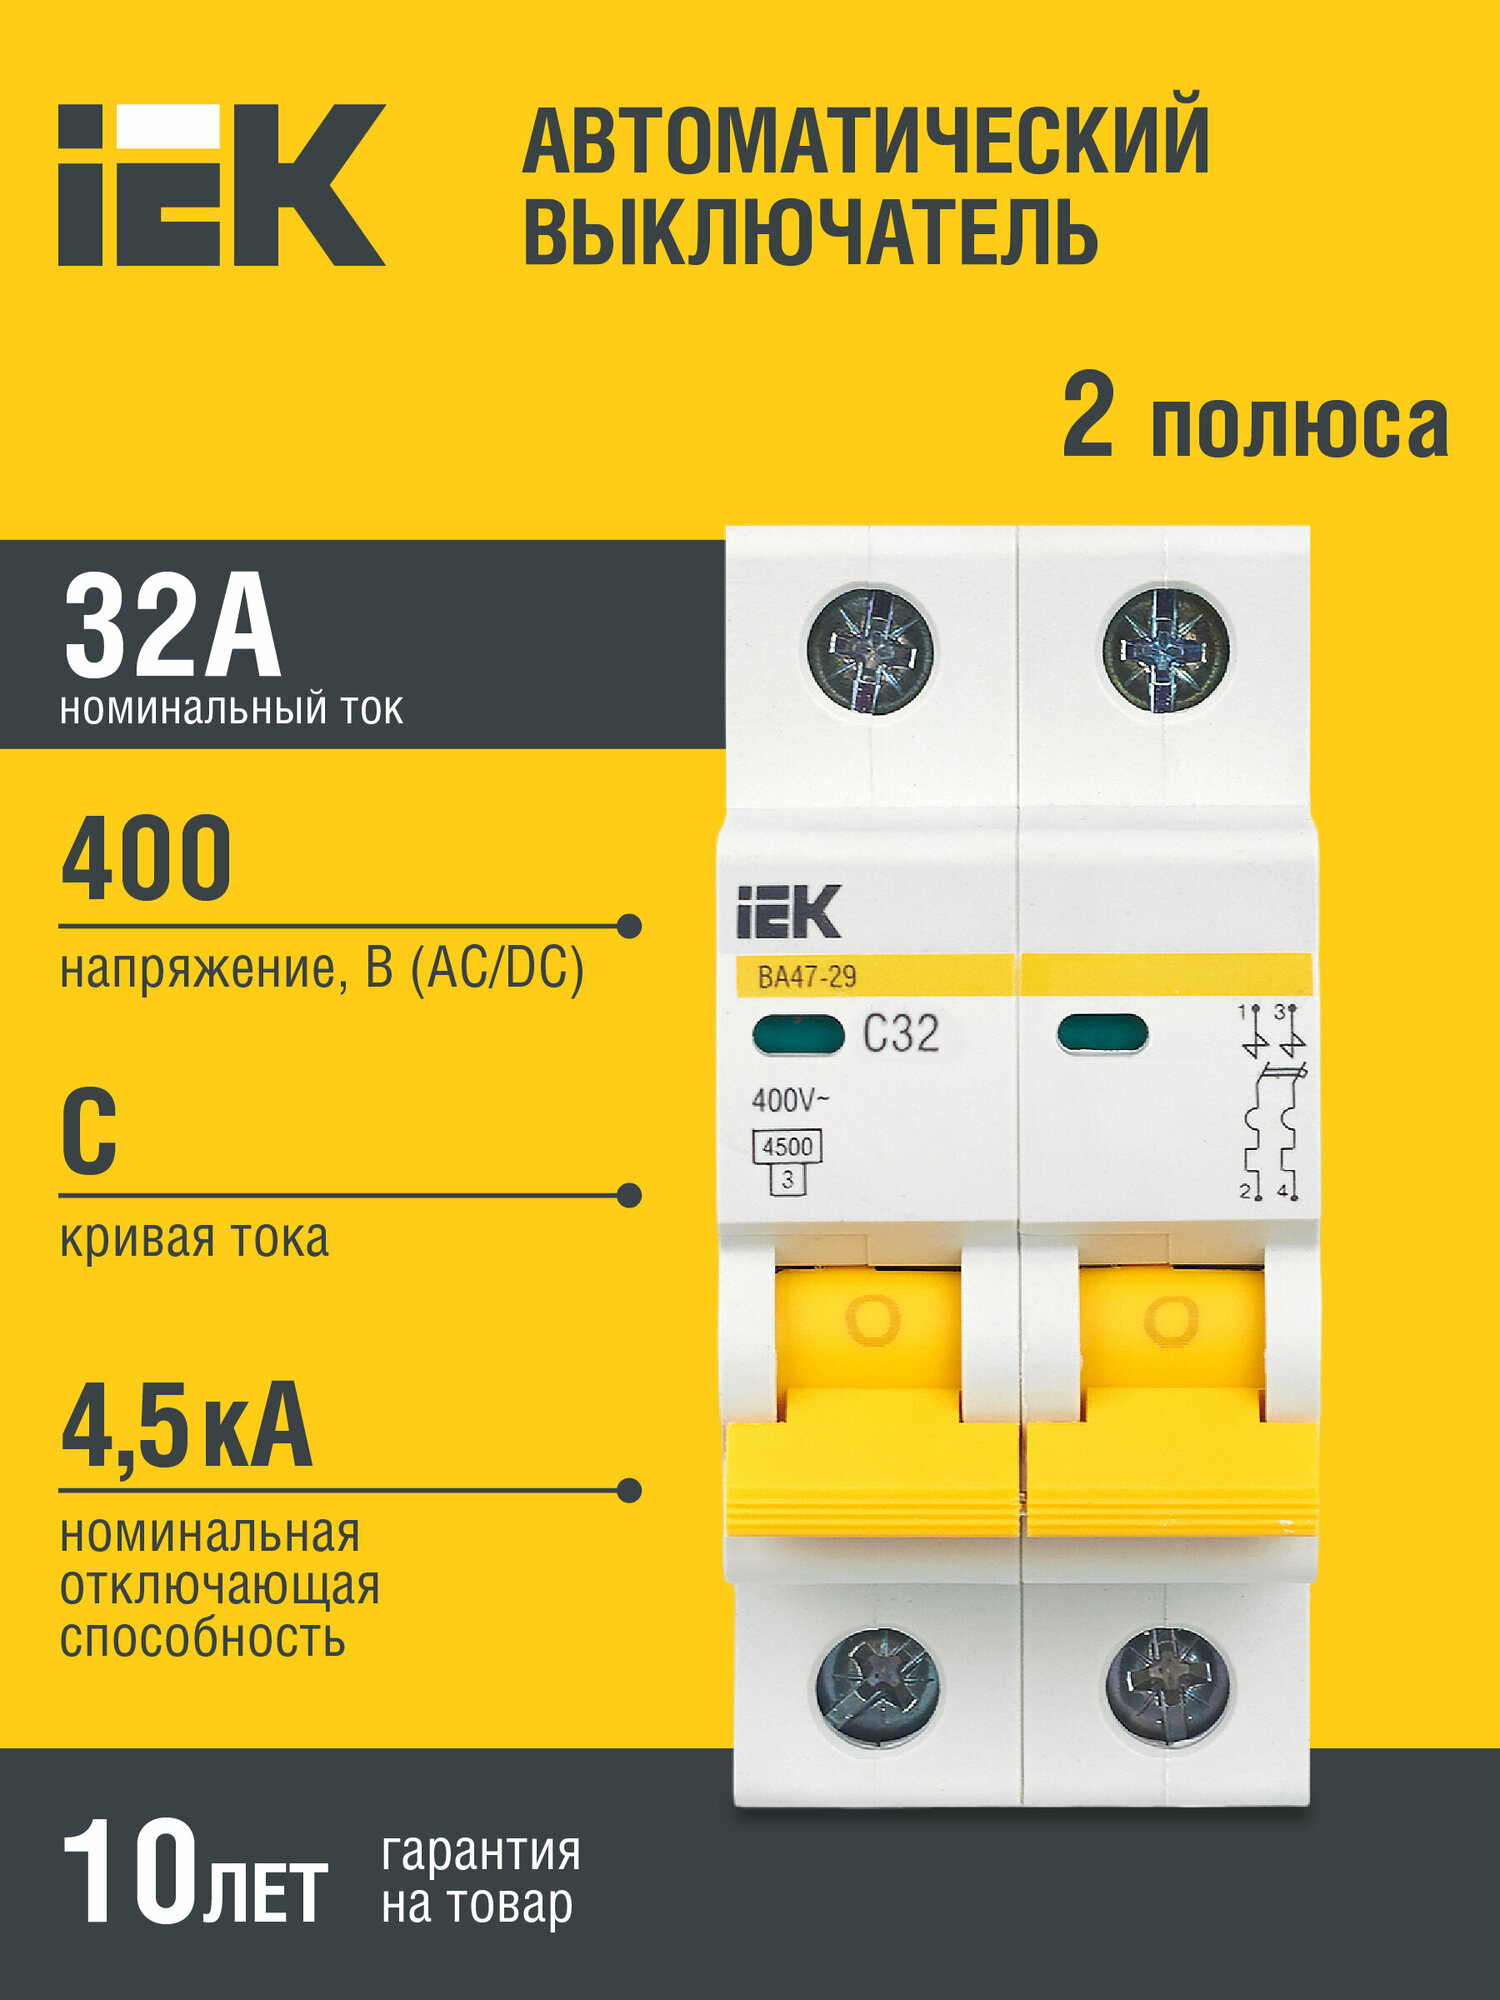 Автоматический выключатель IEK ВА 47-29 (C) электромагнитный 4,5kA